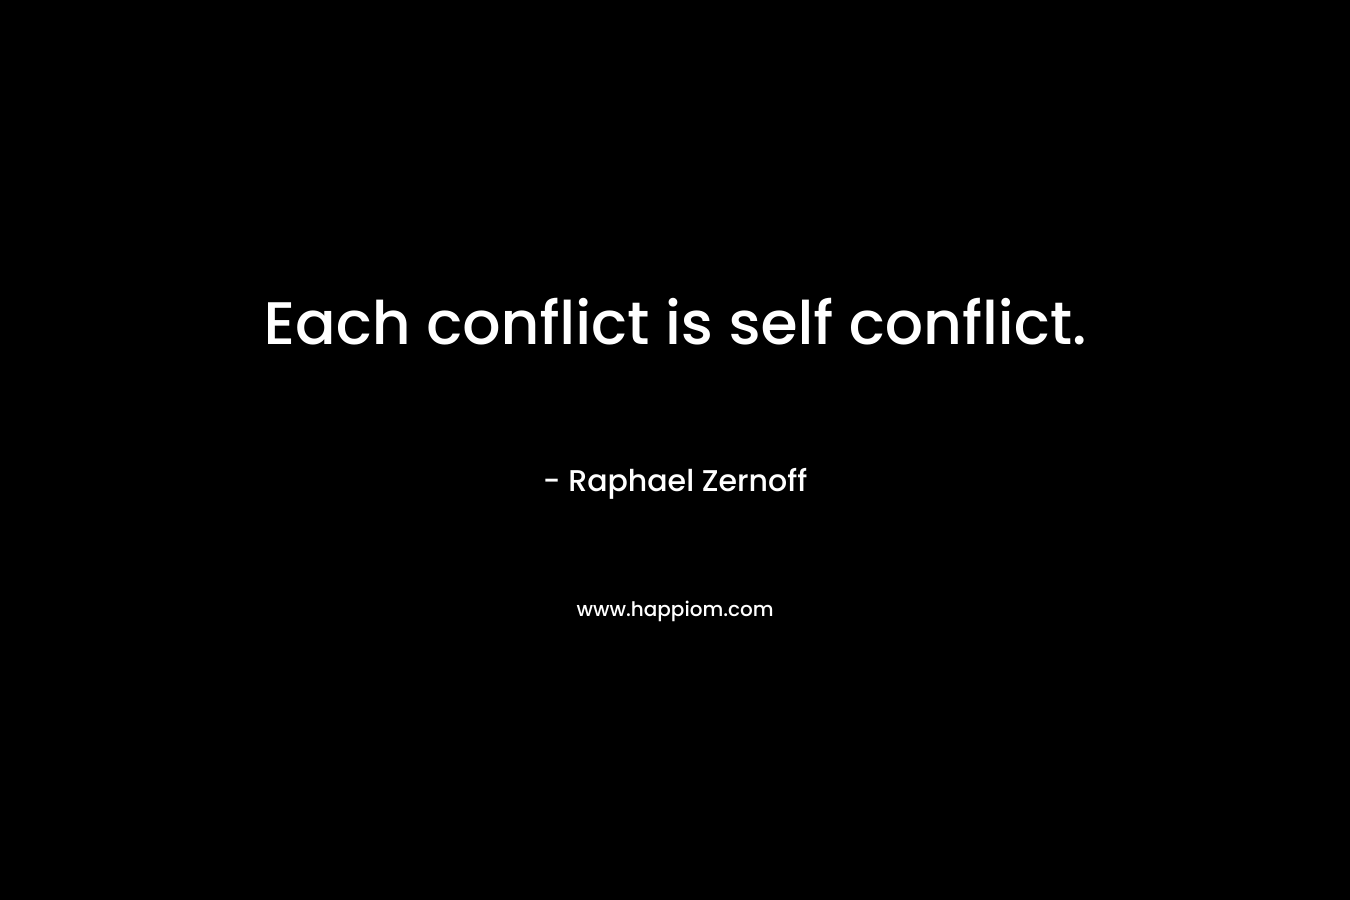 Each conflict is self conflict. – Raphael Zernoff